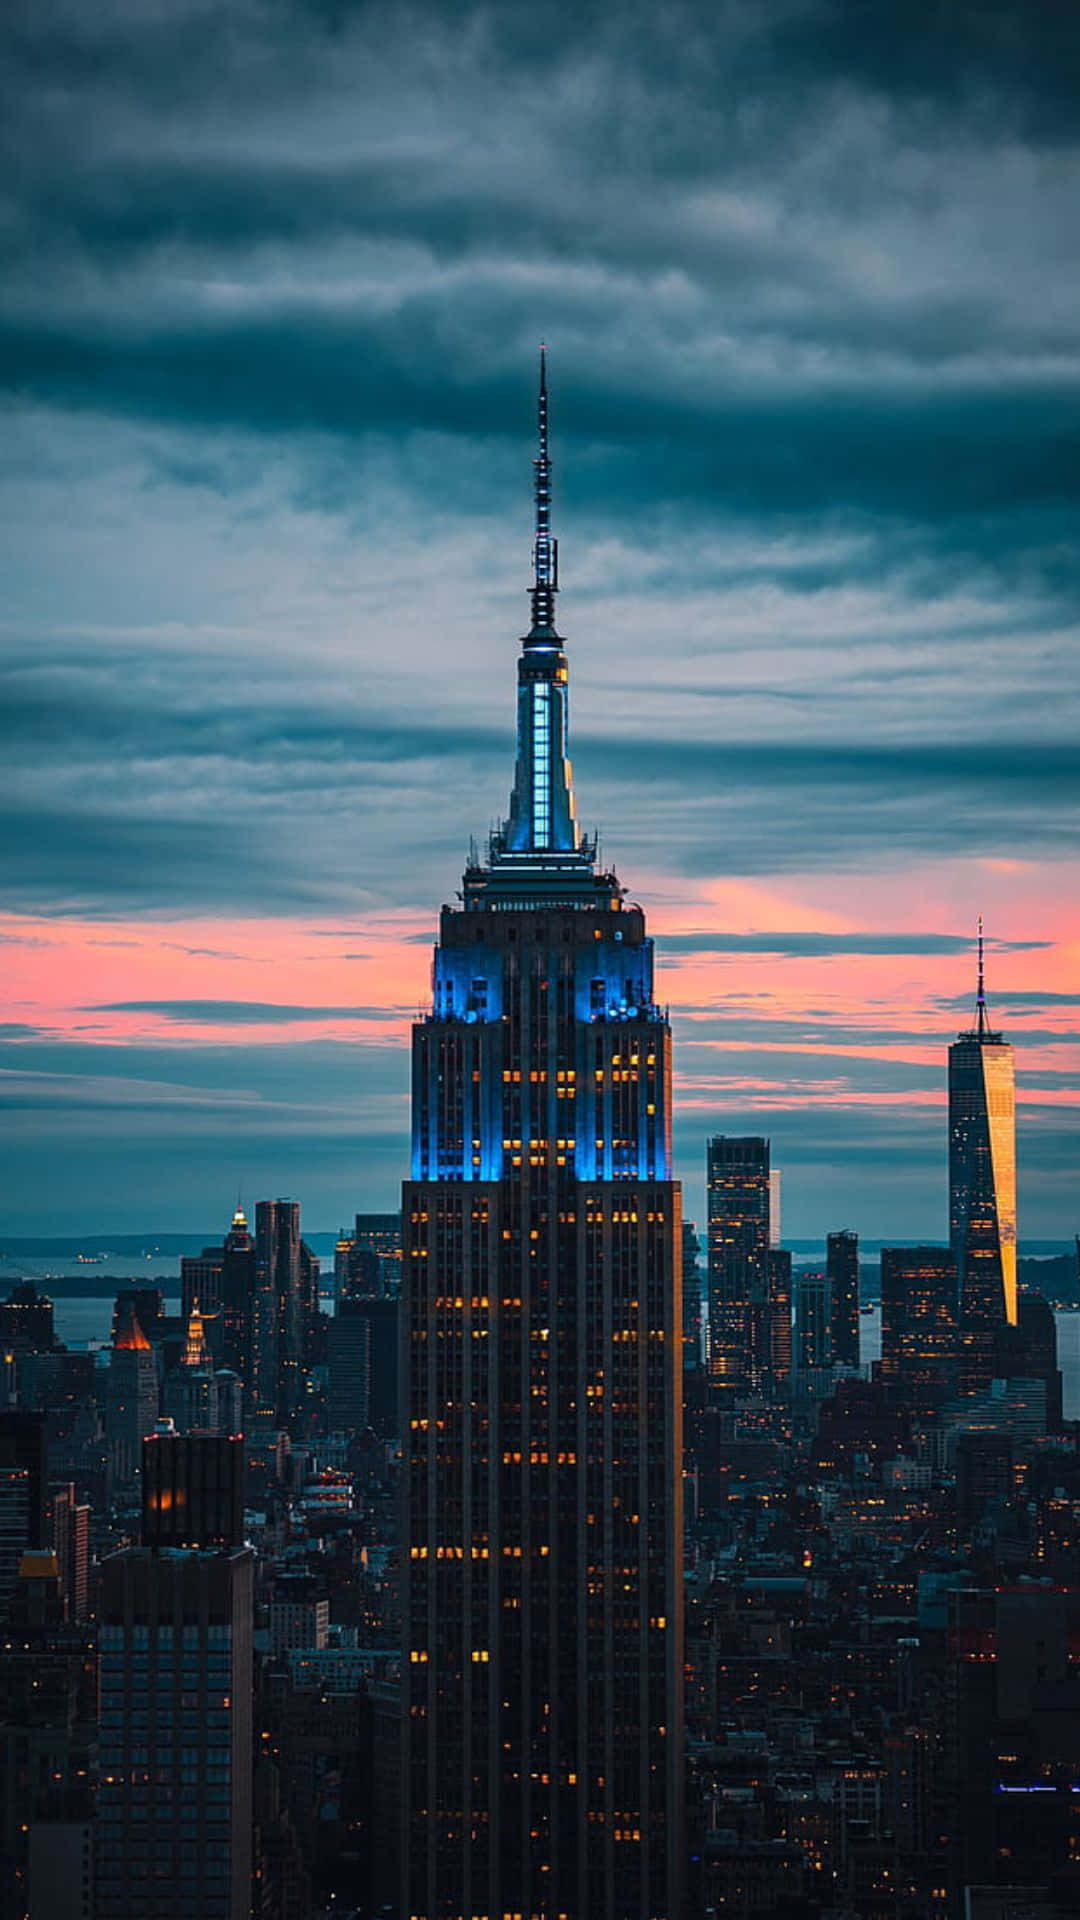 Brilloazul Del Empire State Building, El Mejor Fondo De Pantalla De Nueva York.